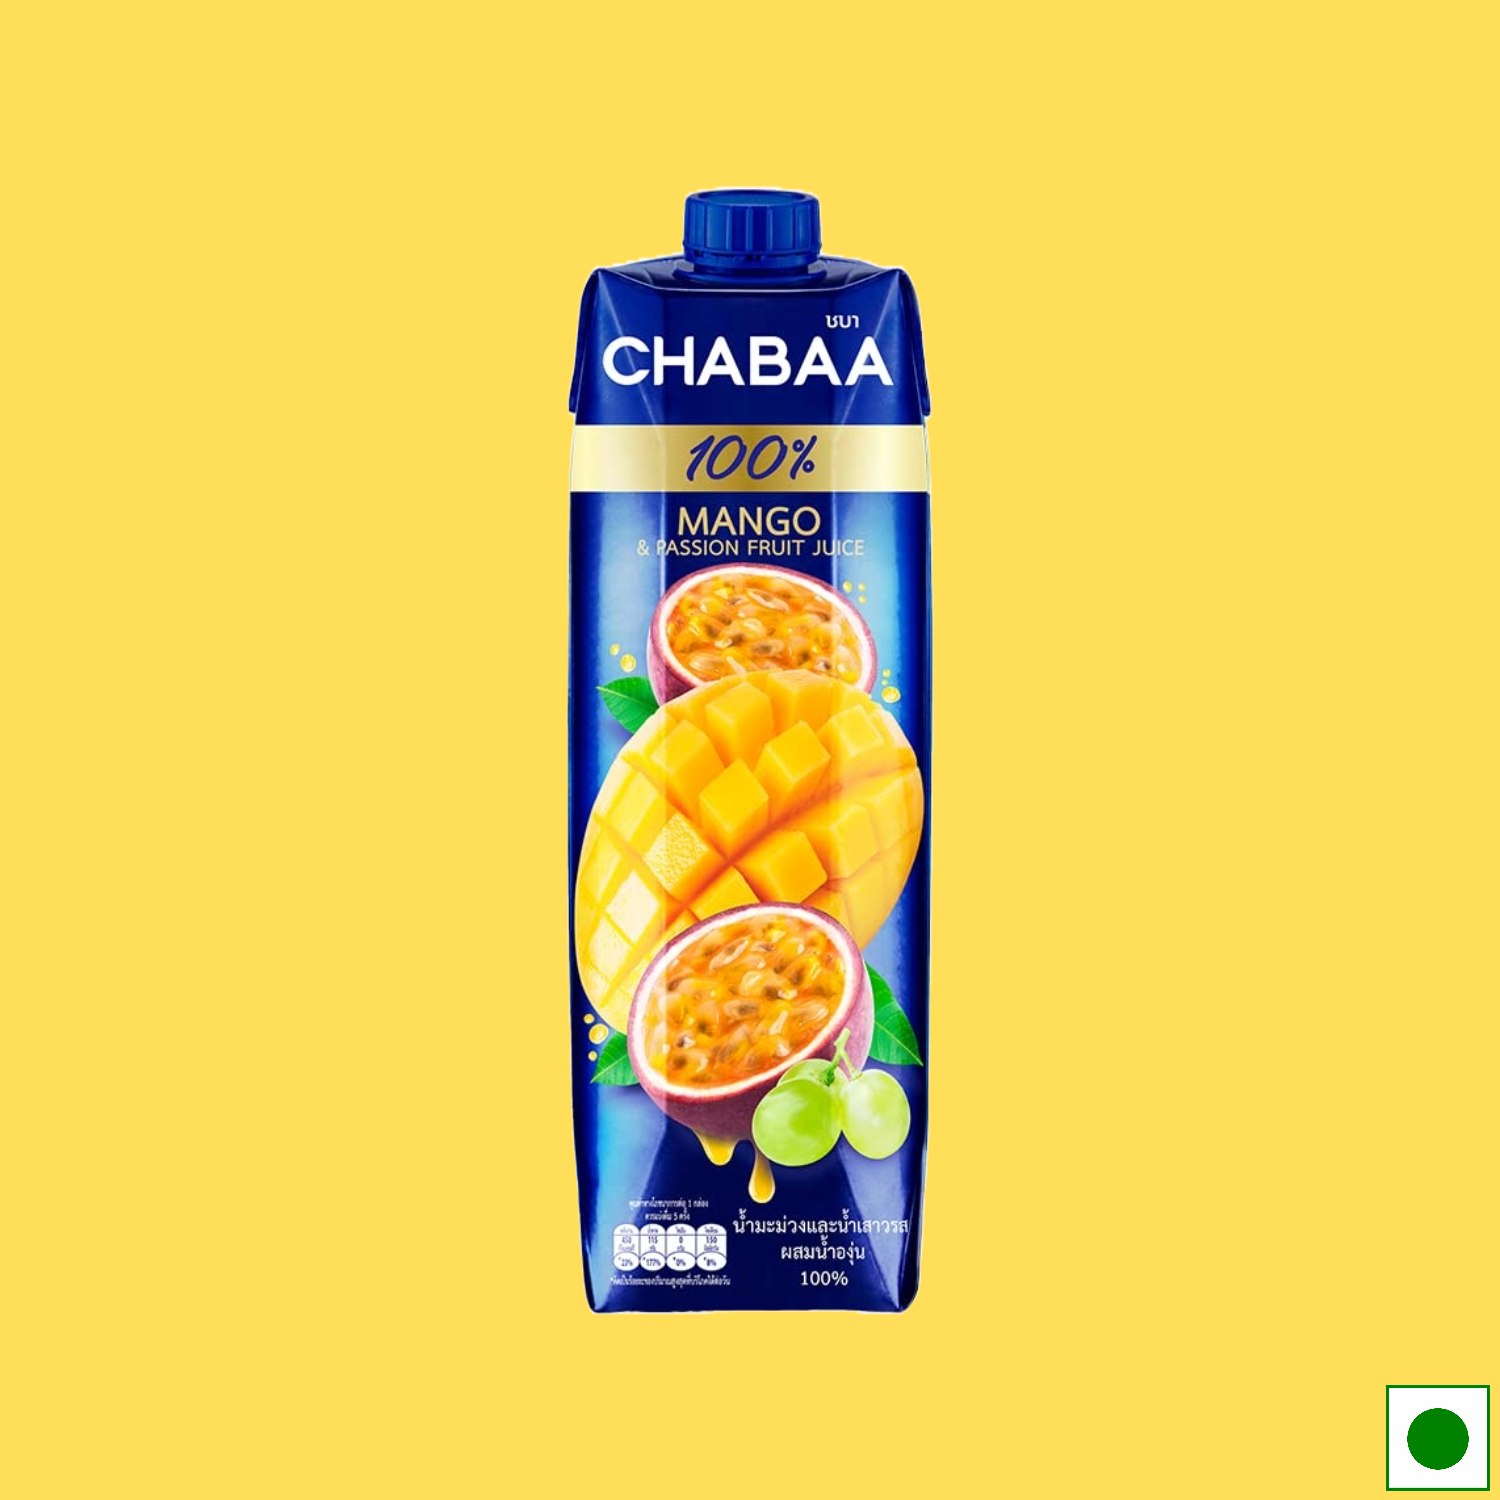 Chabaa Mango & Passion Fruit Juice 1L (Imported)